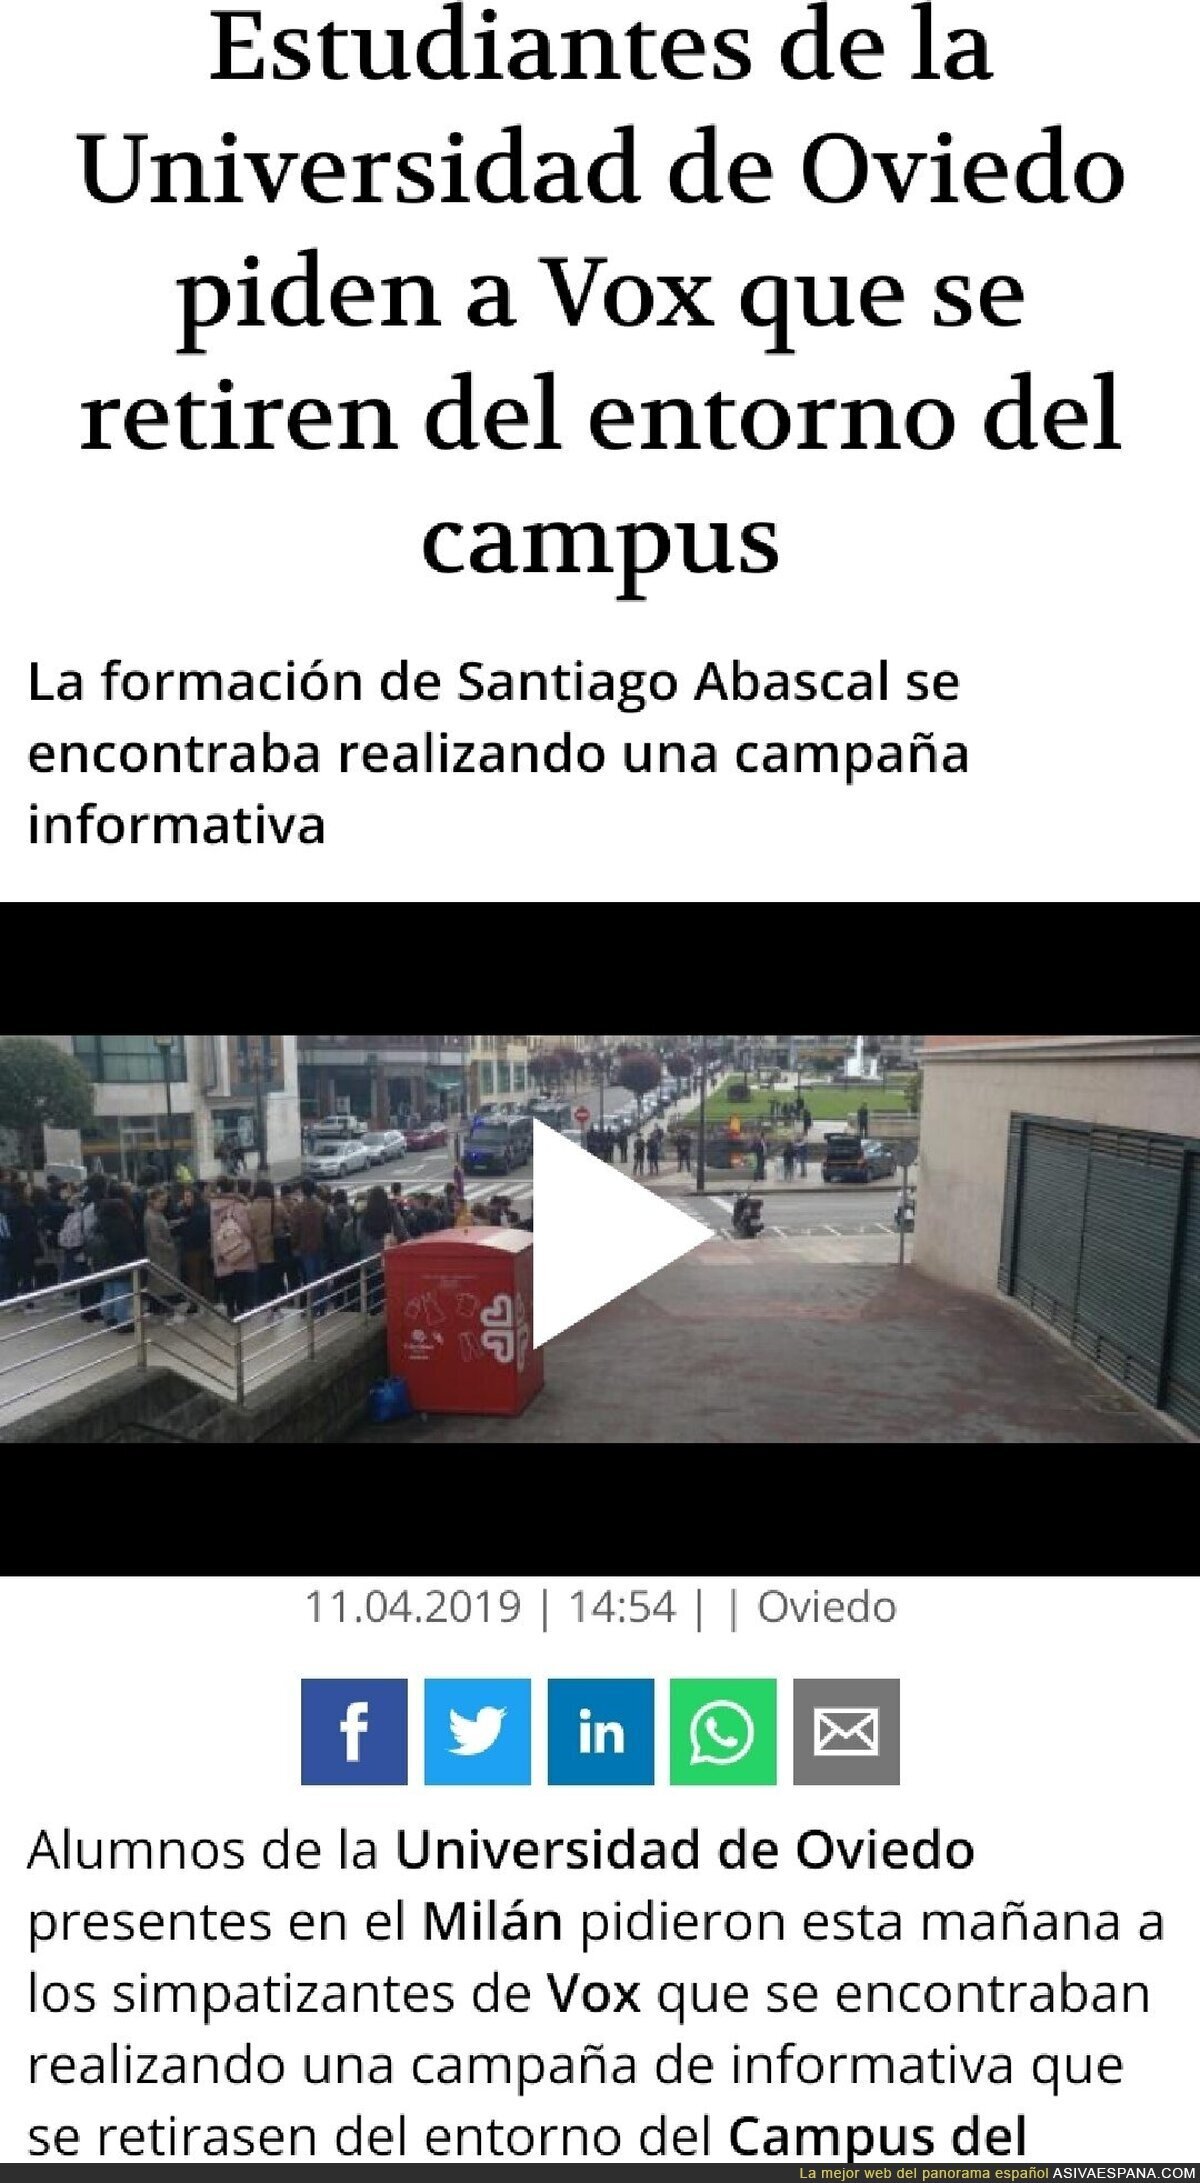 Estudiantes de la Universidad de Oviedo contra VOX